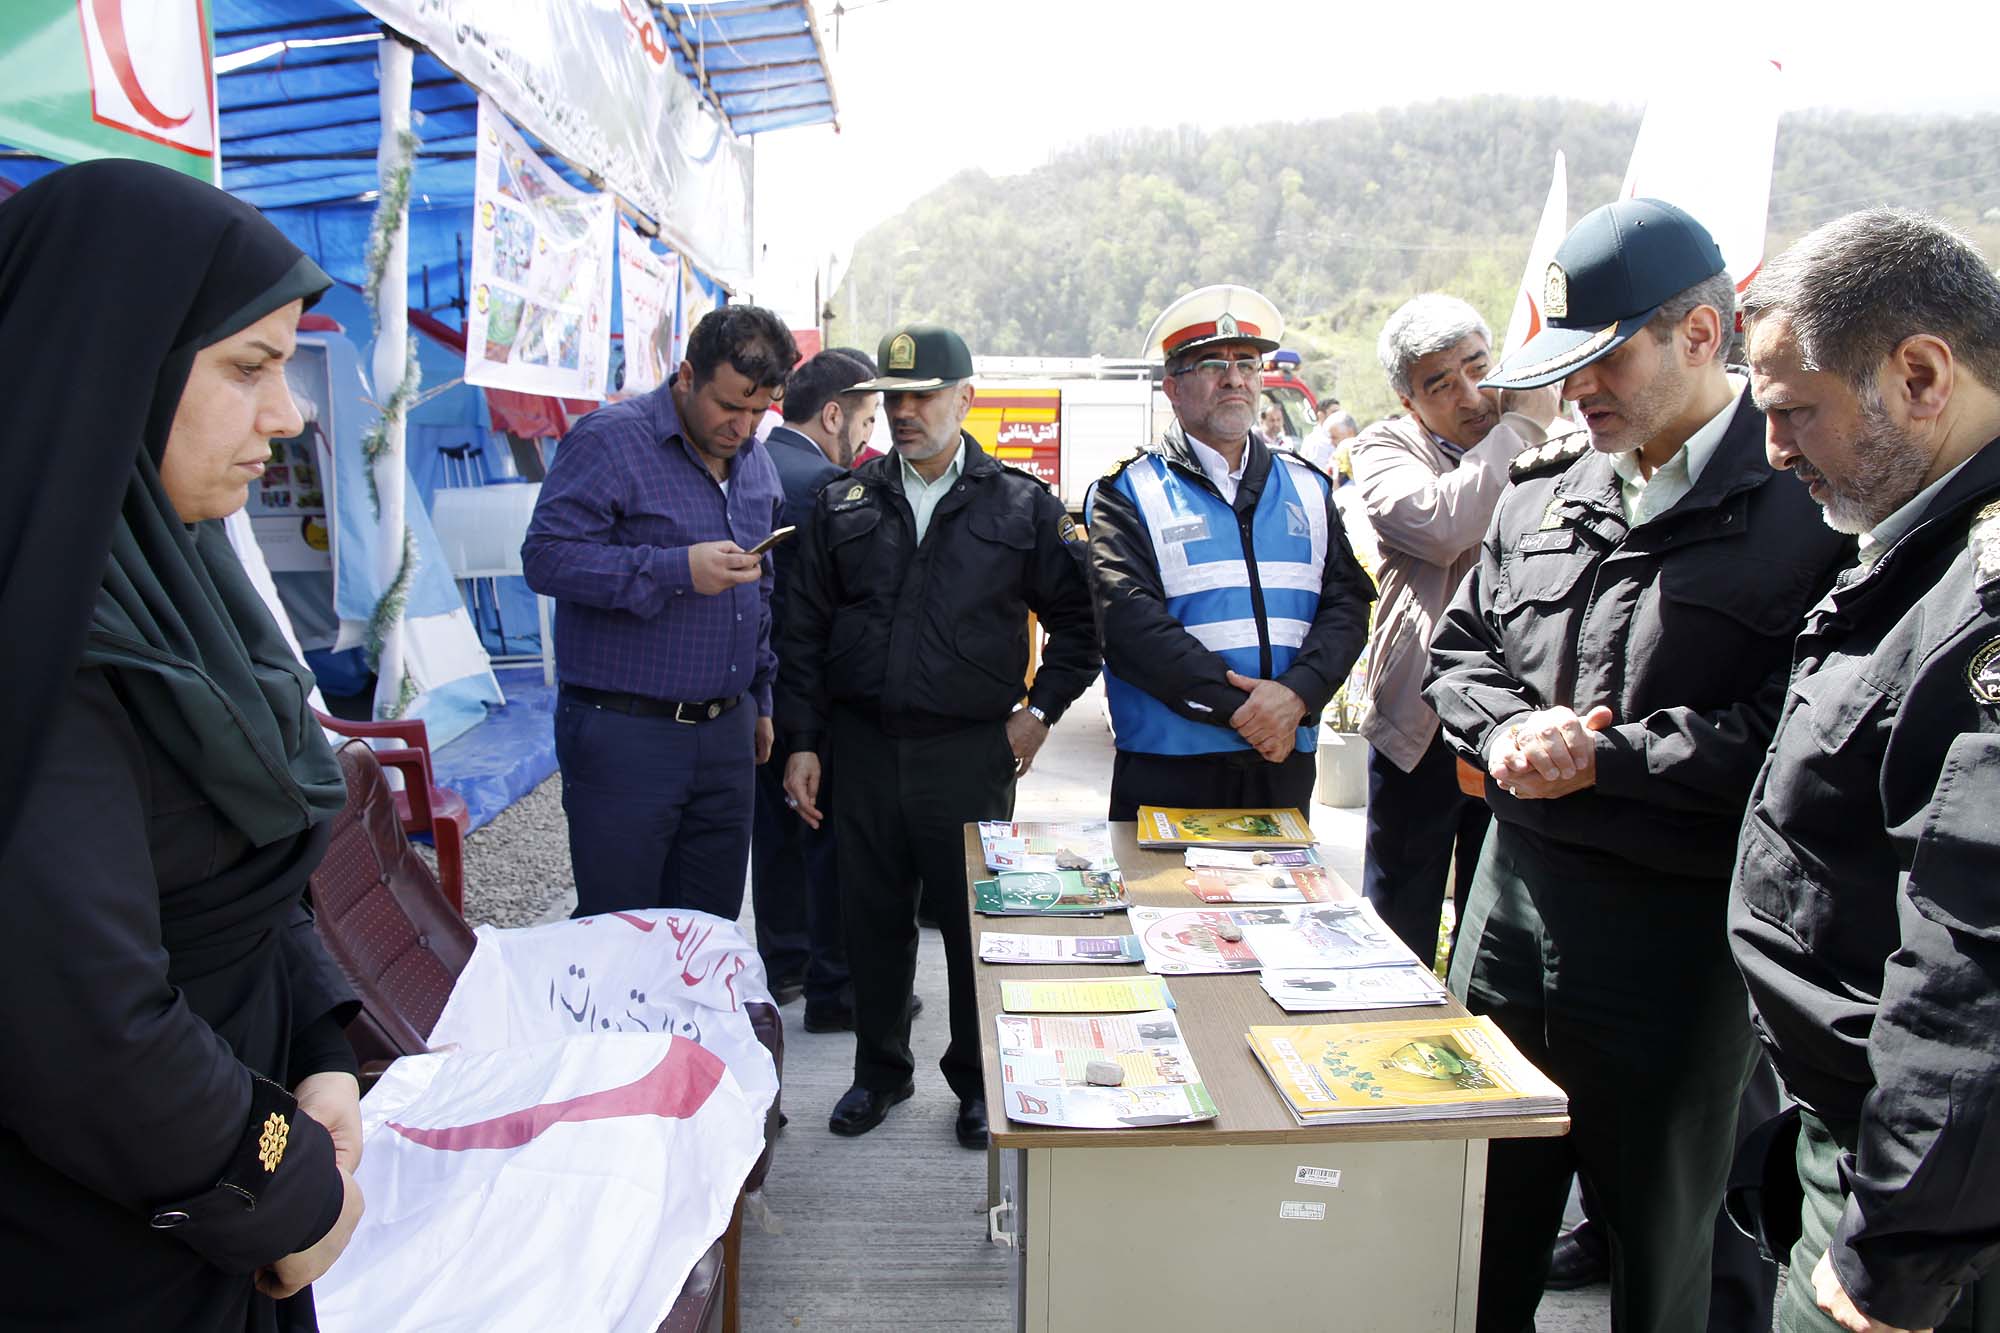 80 ايستگاه نوروزي پليس در مازندران به مسافران خدمات ارائه مي كند